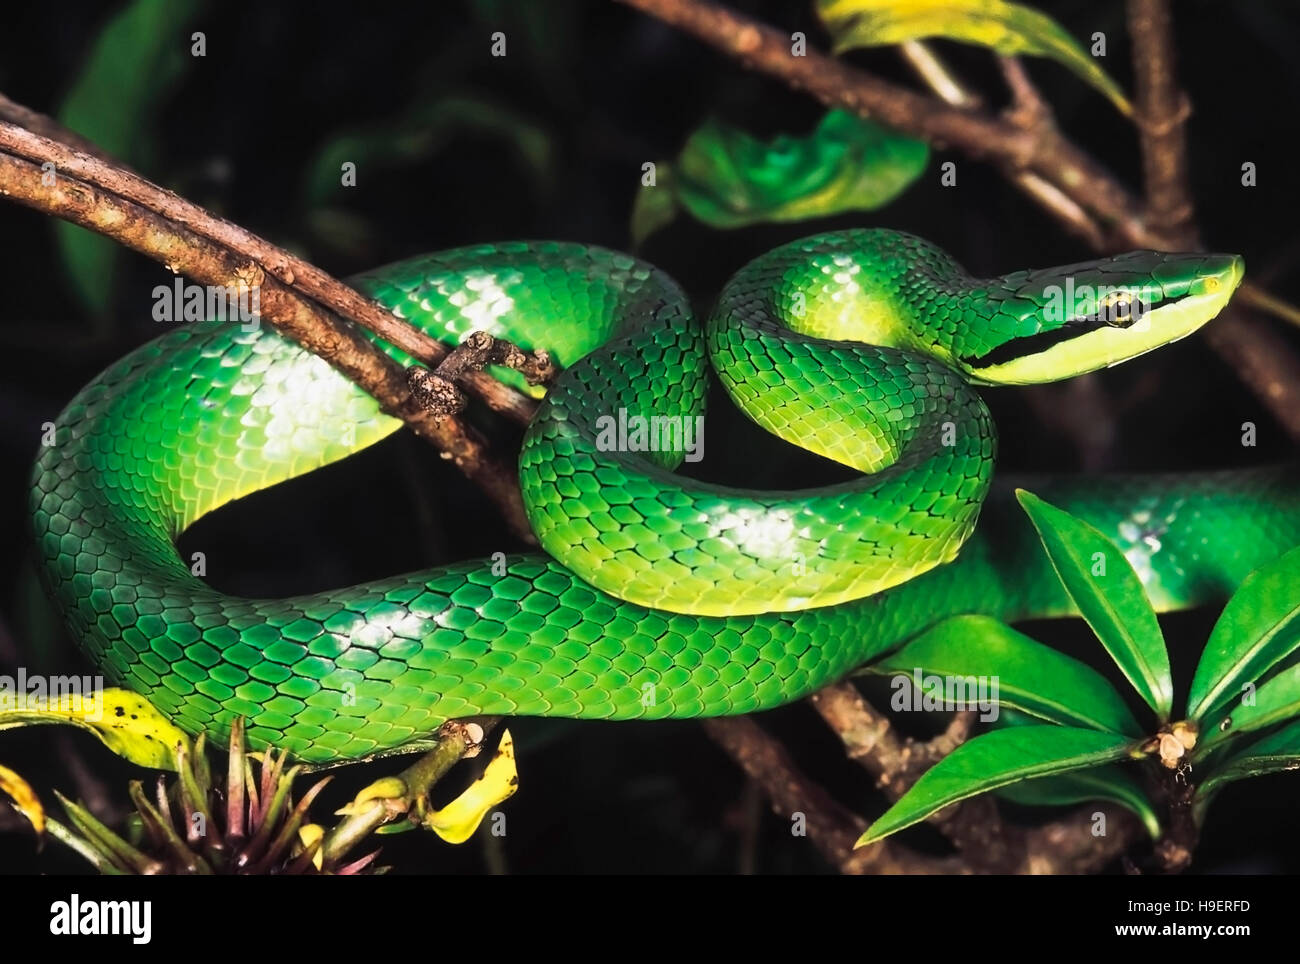 Elaphe Frenata. Green Tree Racer. Rare, Non venomous. Arunachal Pradesh, India. Stock Photo